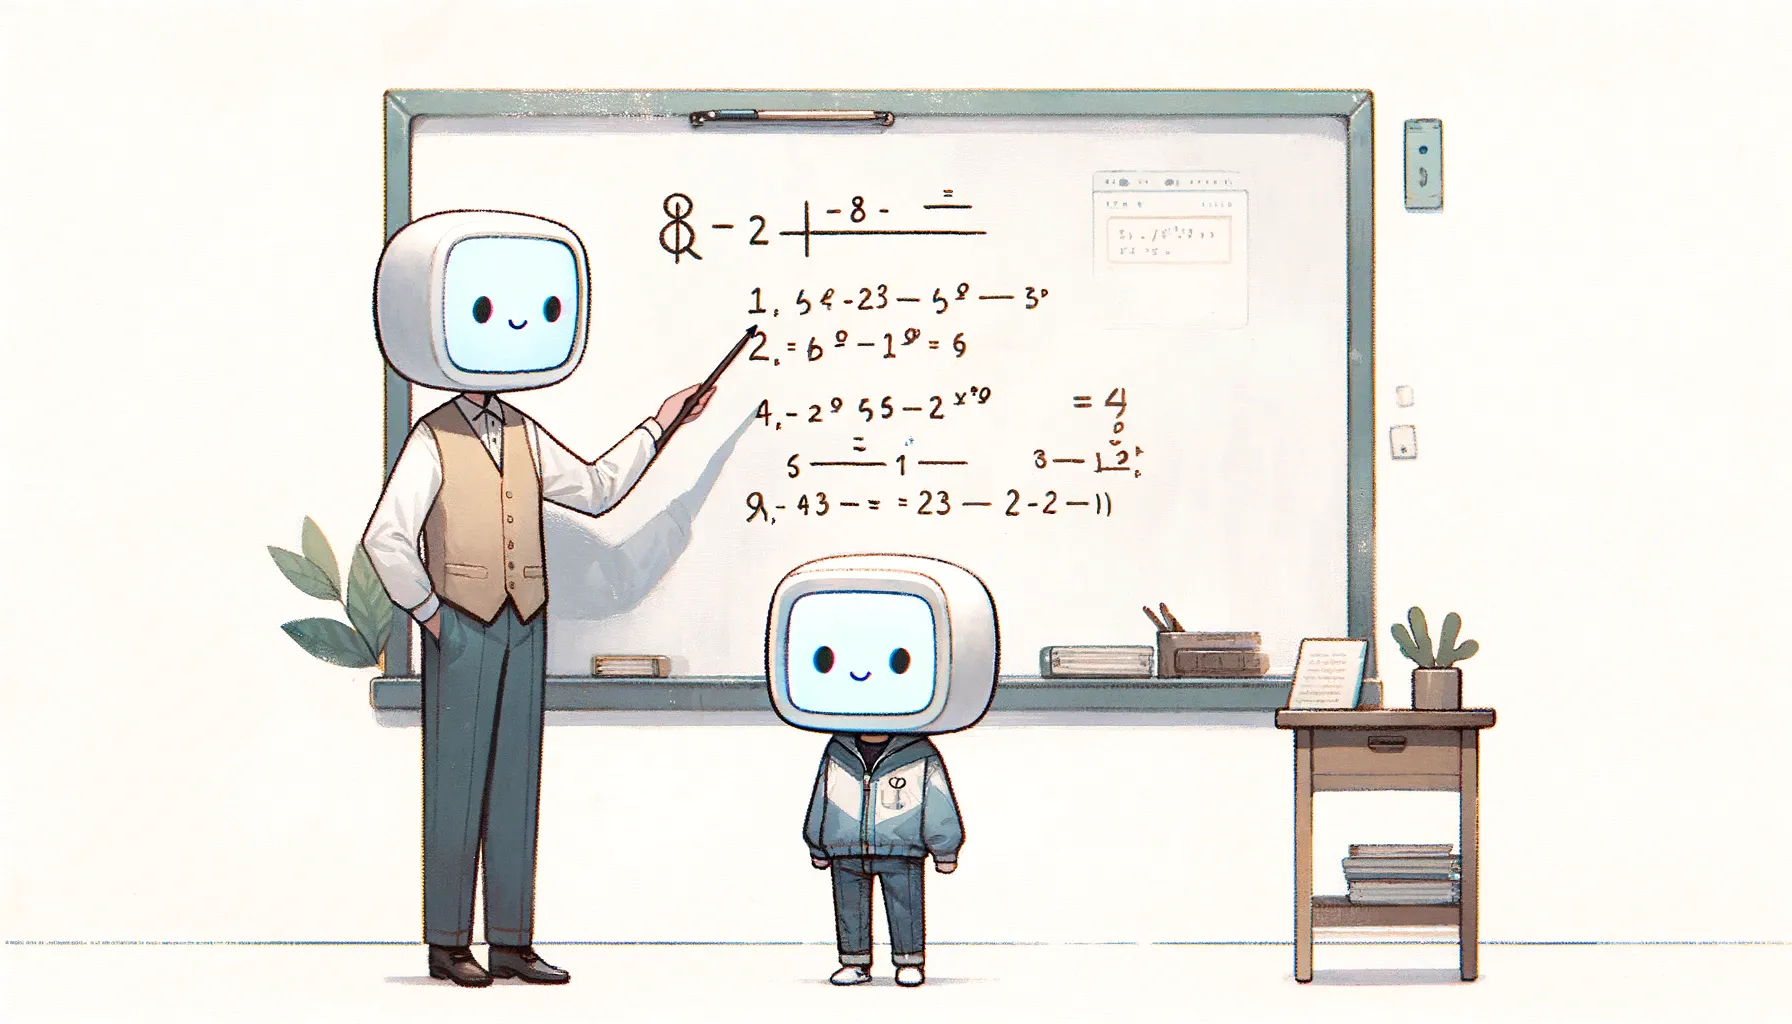 Una ilustraciÃ³n mostrando a dos robots, un profesor y un alumno, en un aula. El profesor seÃ±ala a la pizarra